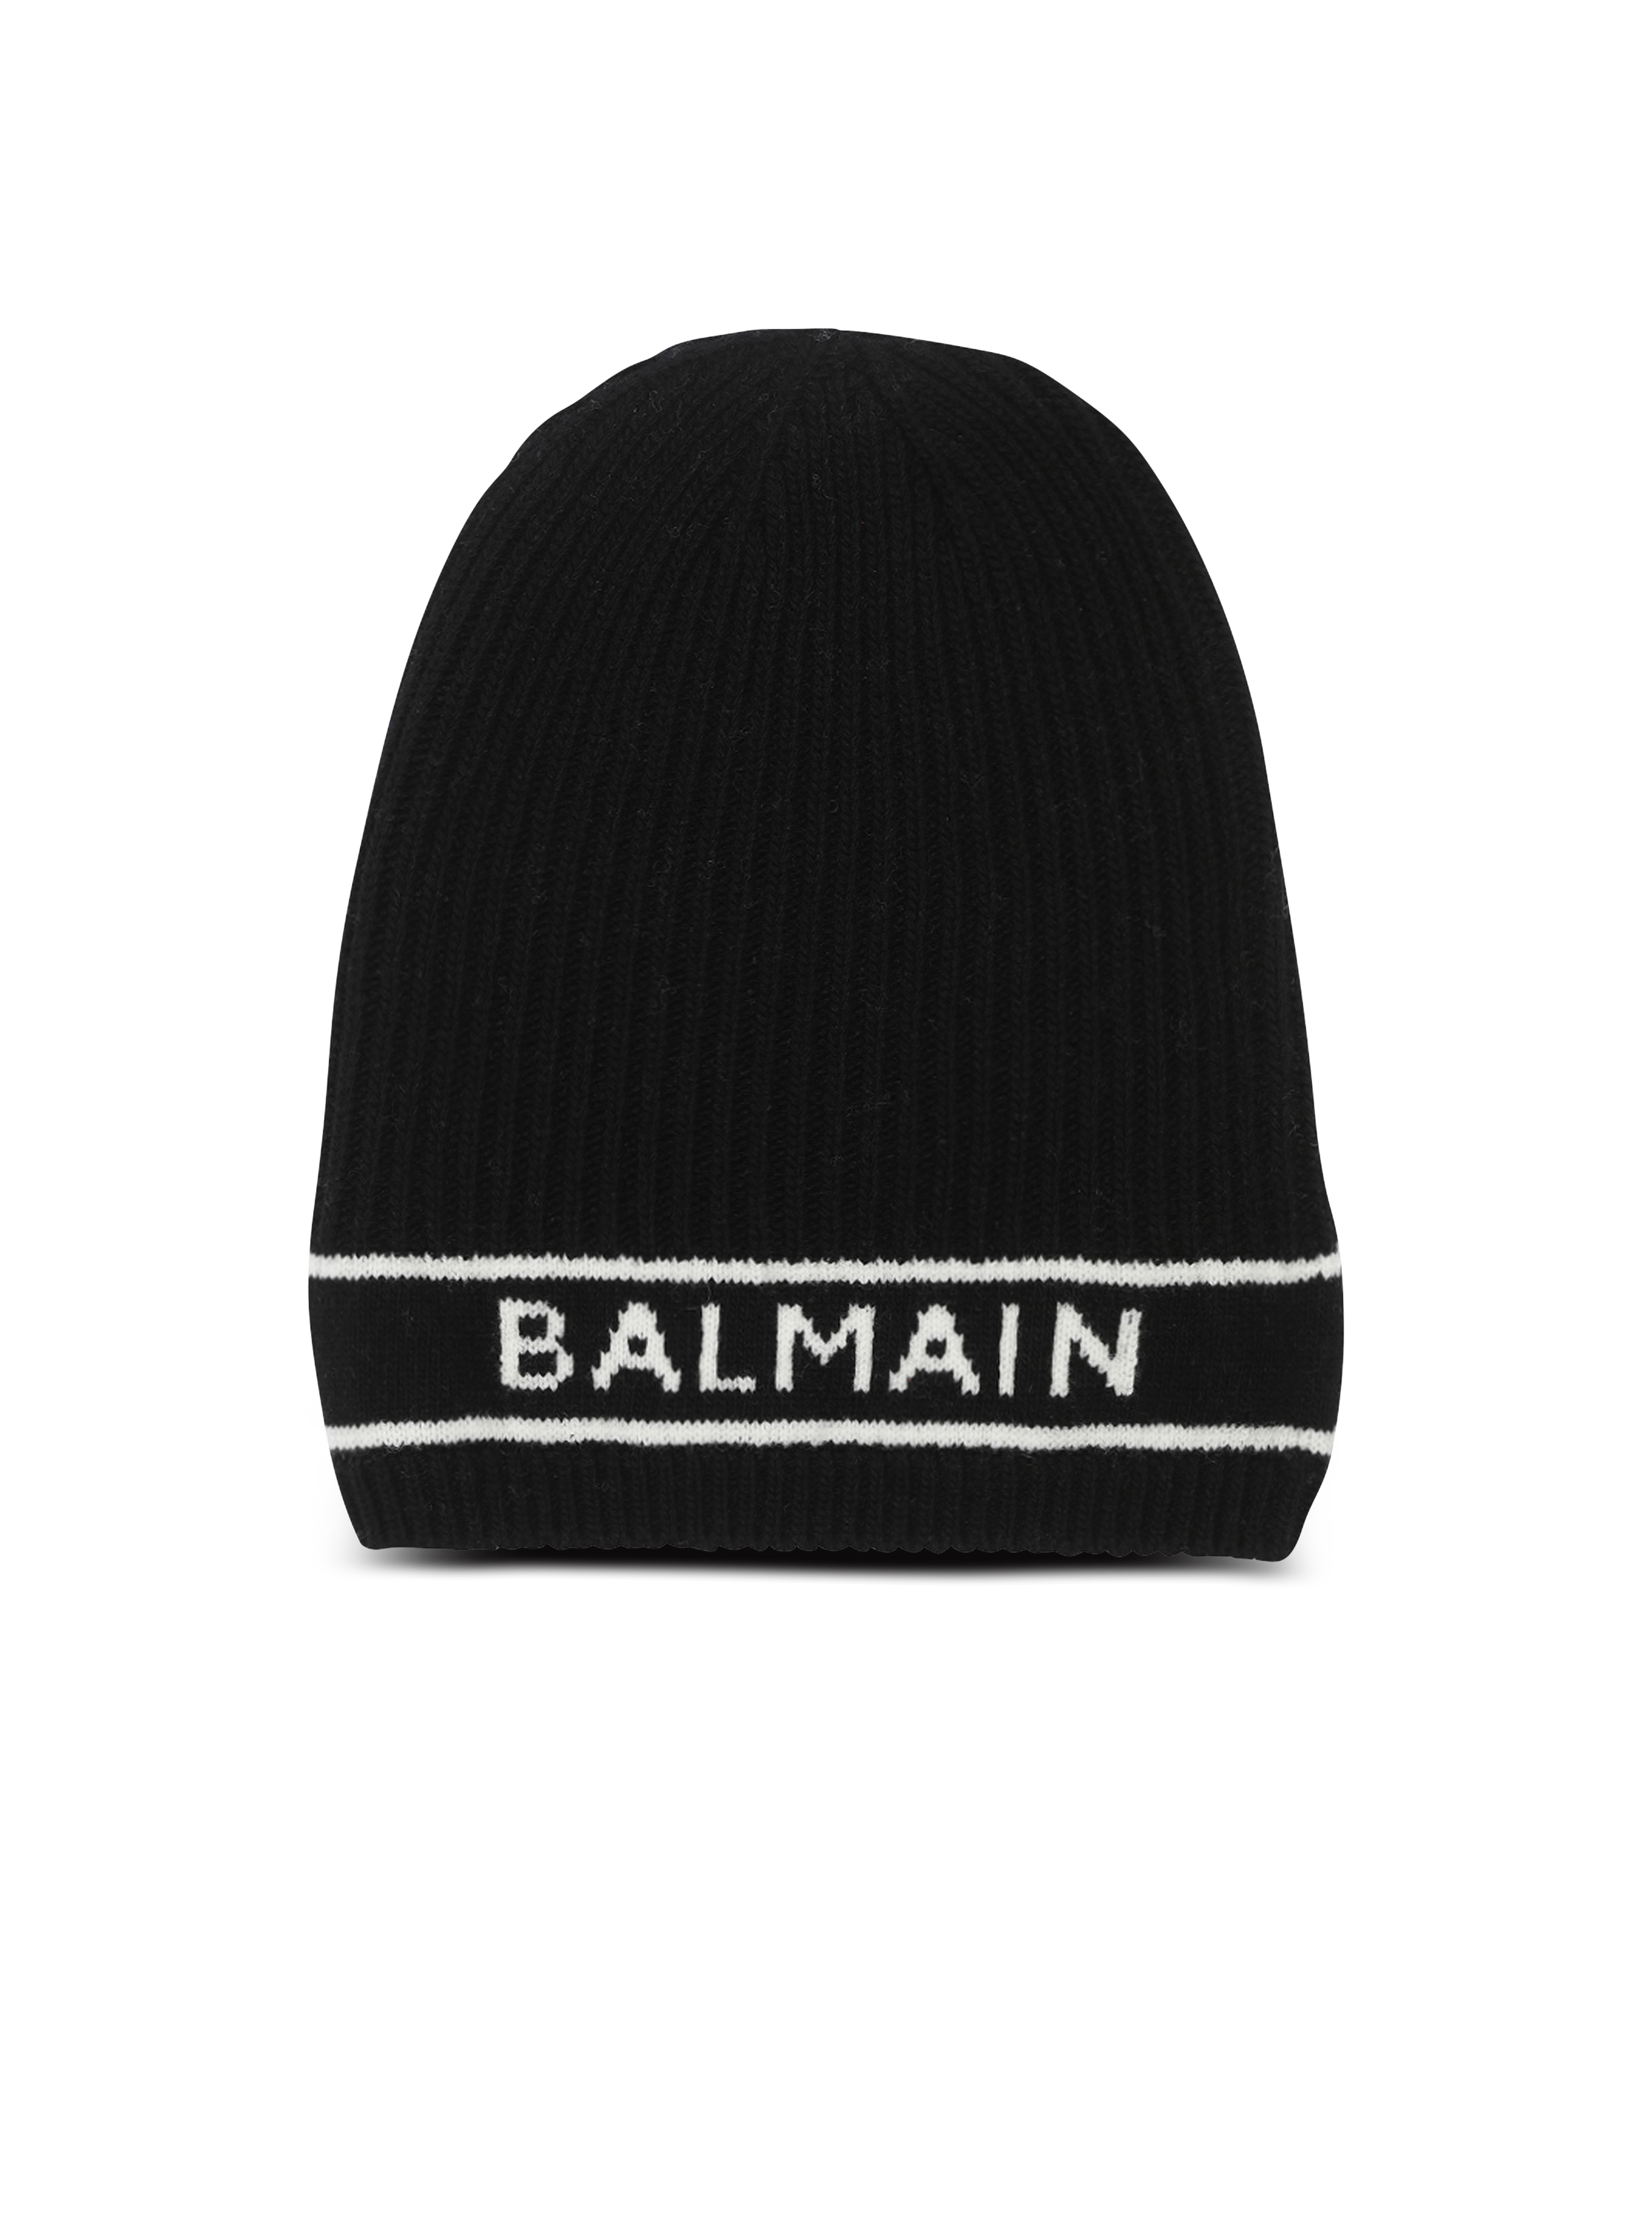 Balmain logo embroidered wool hat, black